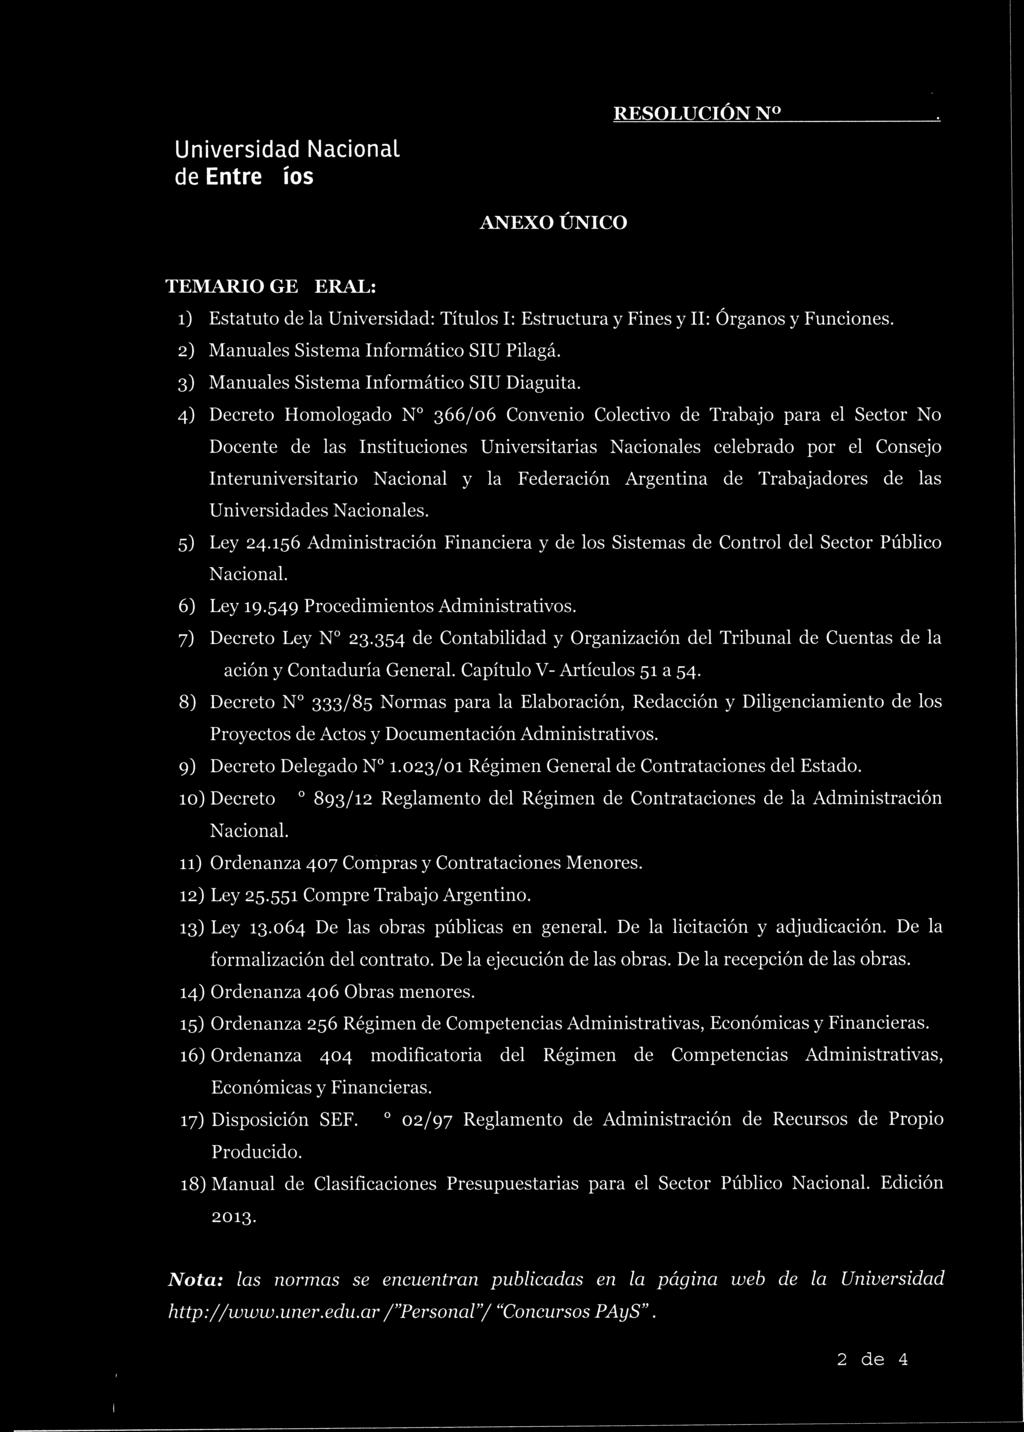 Federación Argentina de Trabajadores de las Universidades Nacionales. 5) Ley 24.156 Administración Financiera y de los Sistemas de Control del Sector Público Nacional. 6) Ley 19.